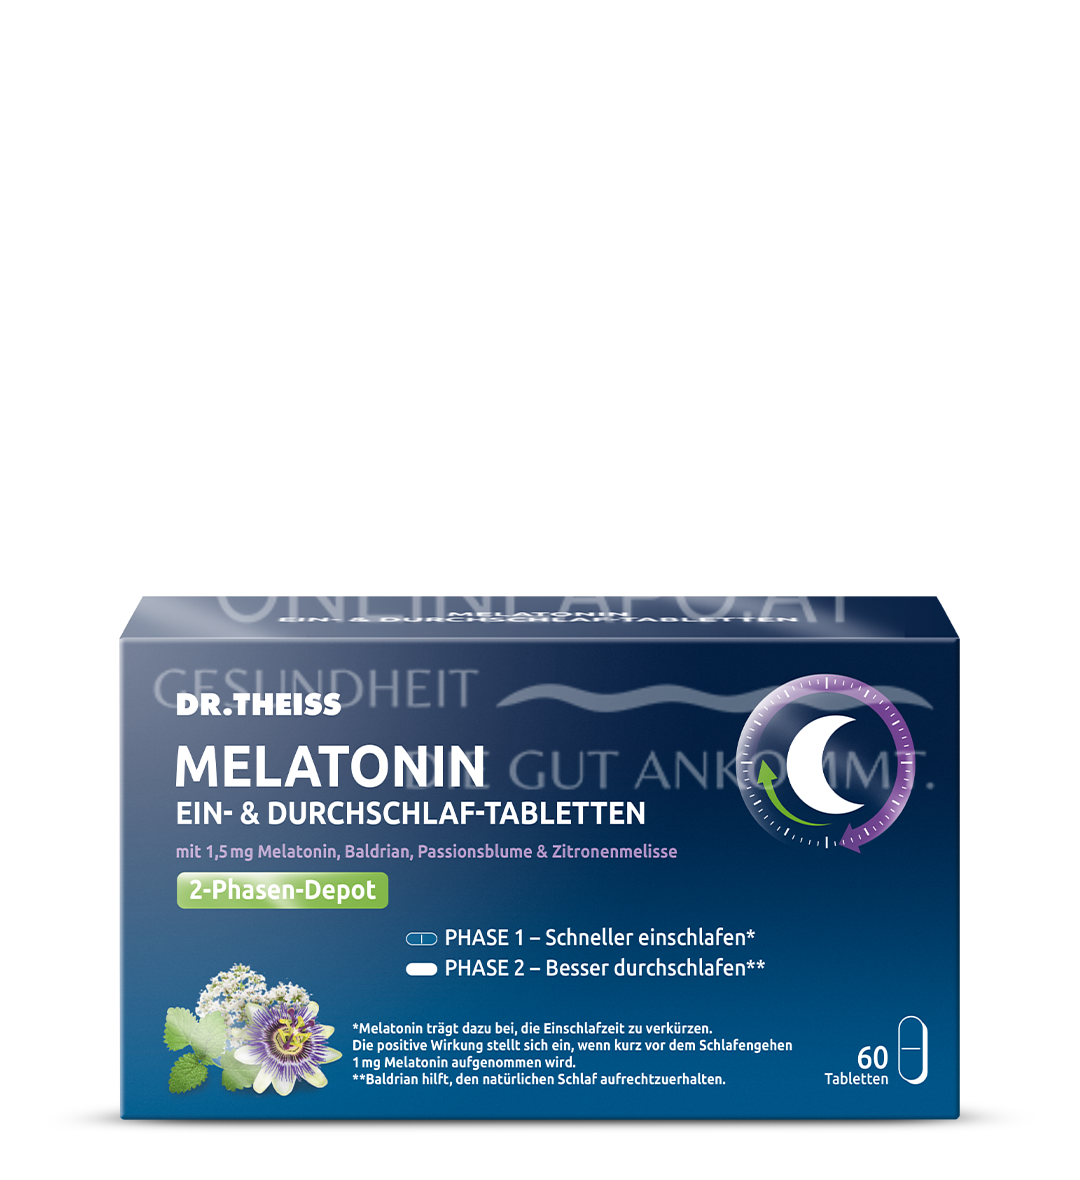 DR. THEISS Melatonin Ein- & Durchschlaf-Tabletten